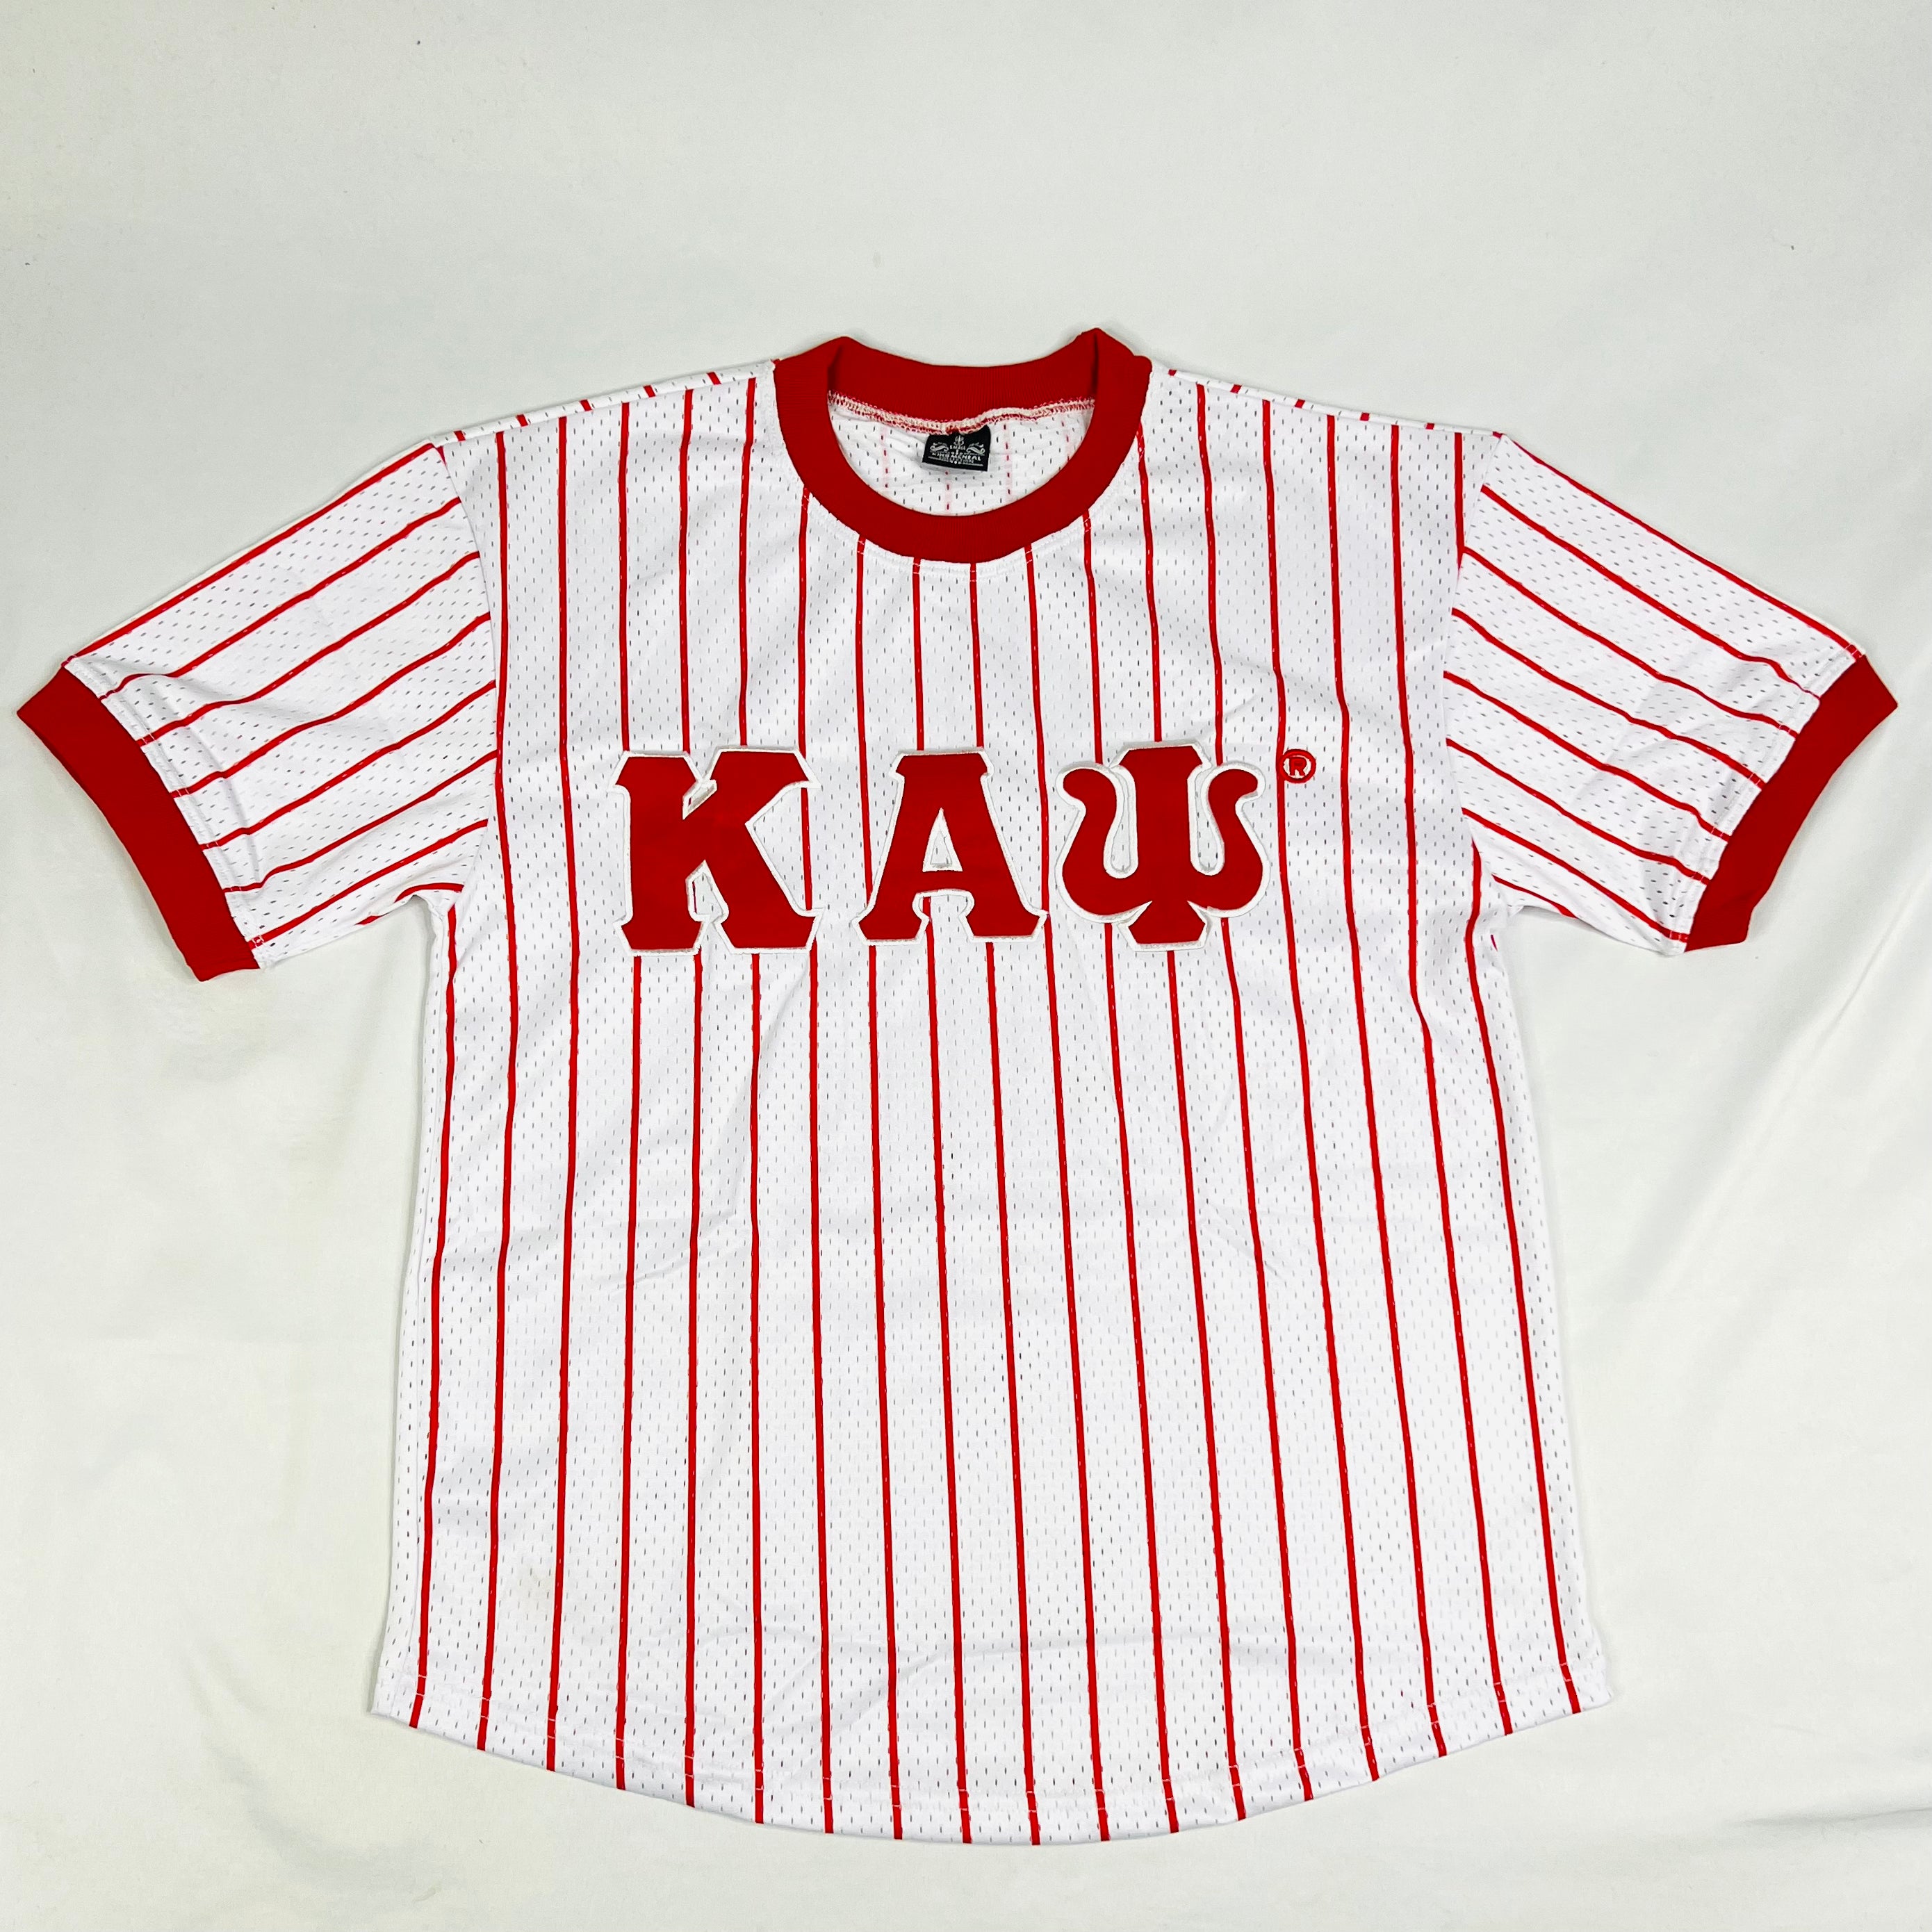 Kappa White Pinstripe Baseball Jersey